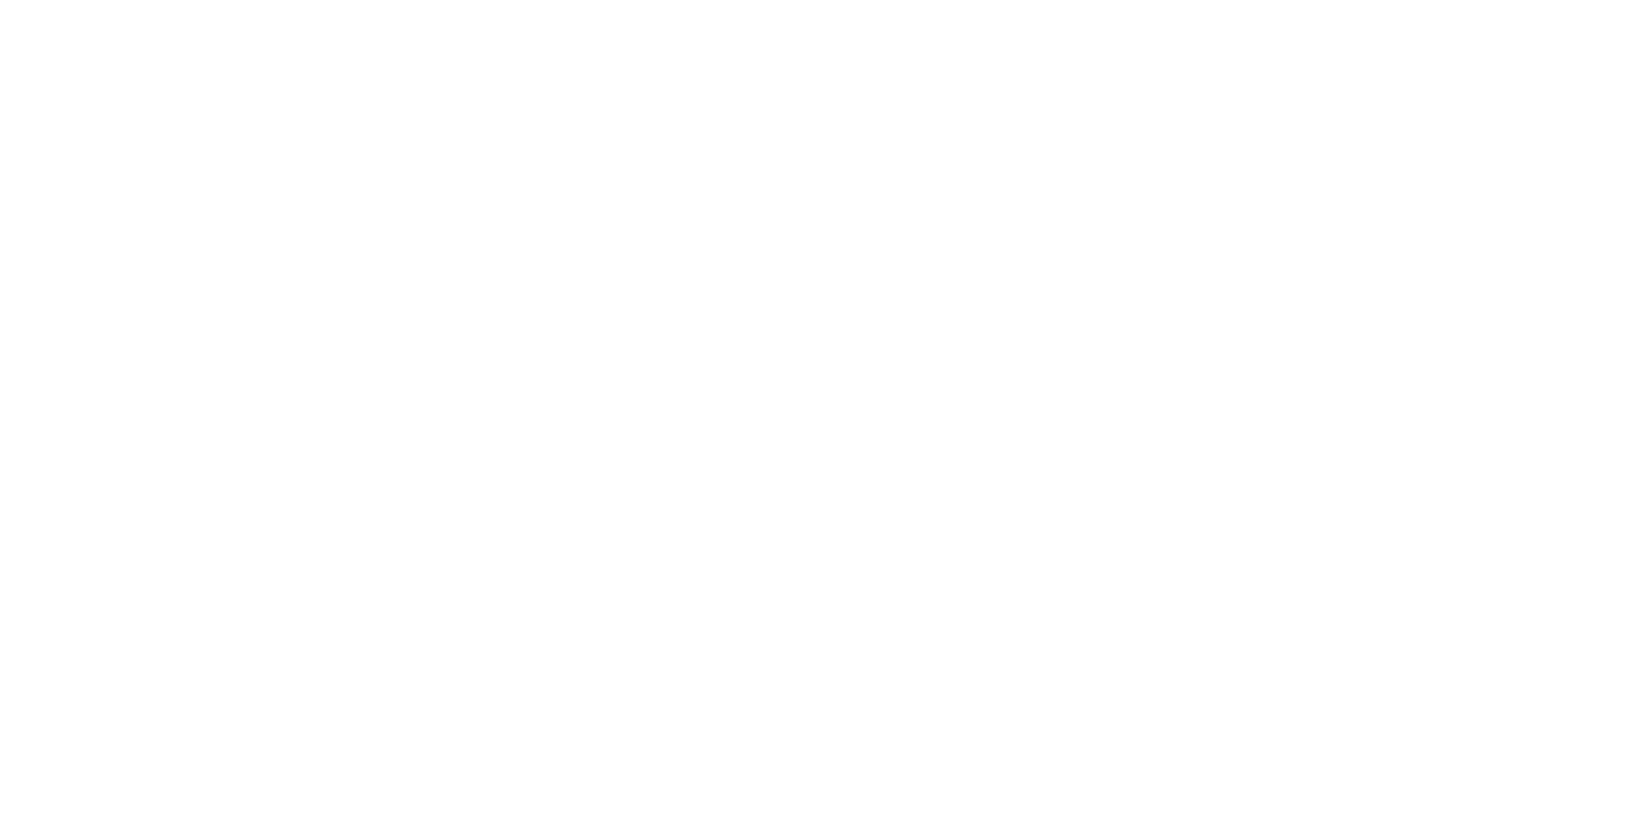 Centerra Gold Logo groß für dunkle Hintergründe (transparentes PNG)